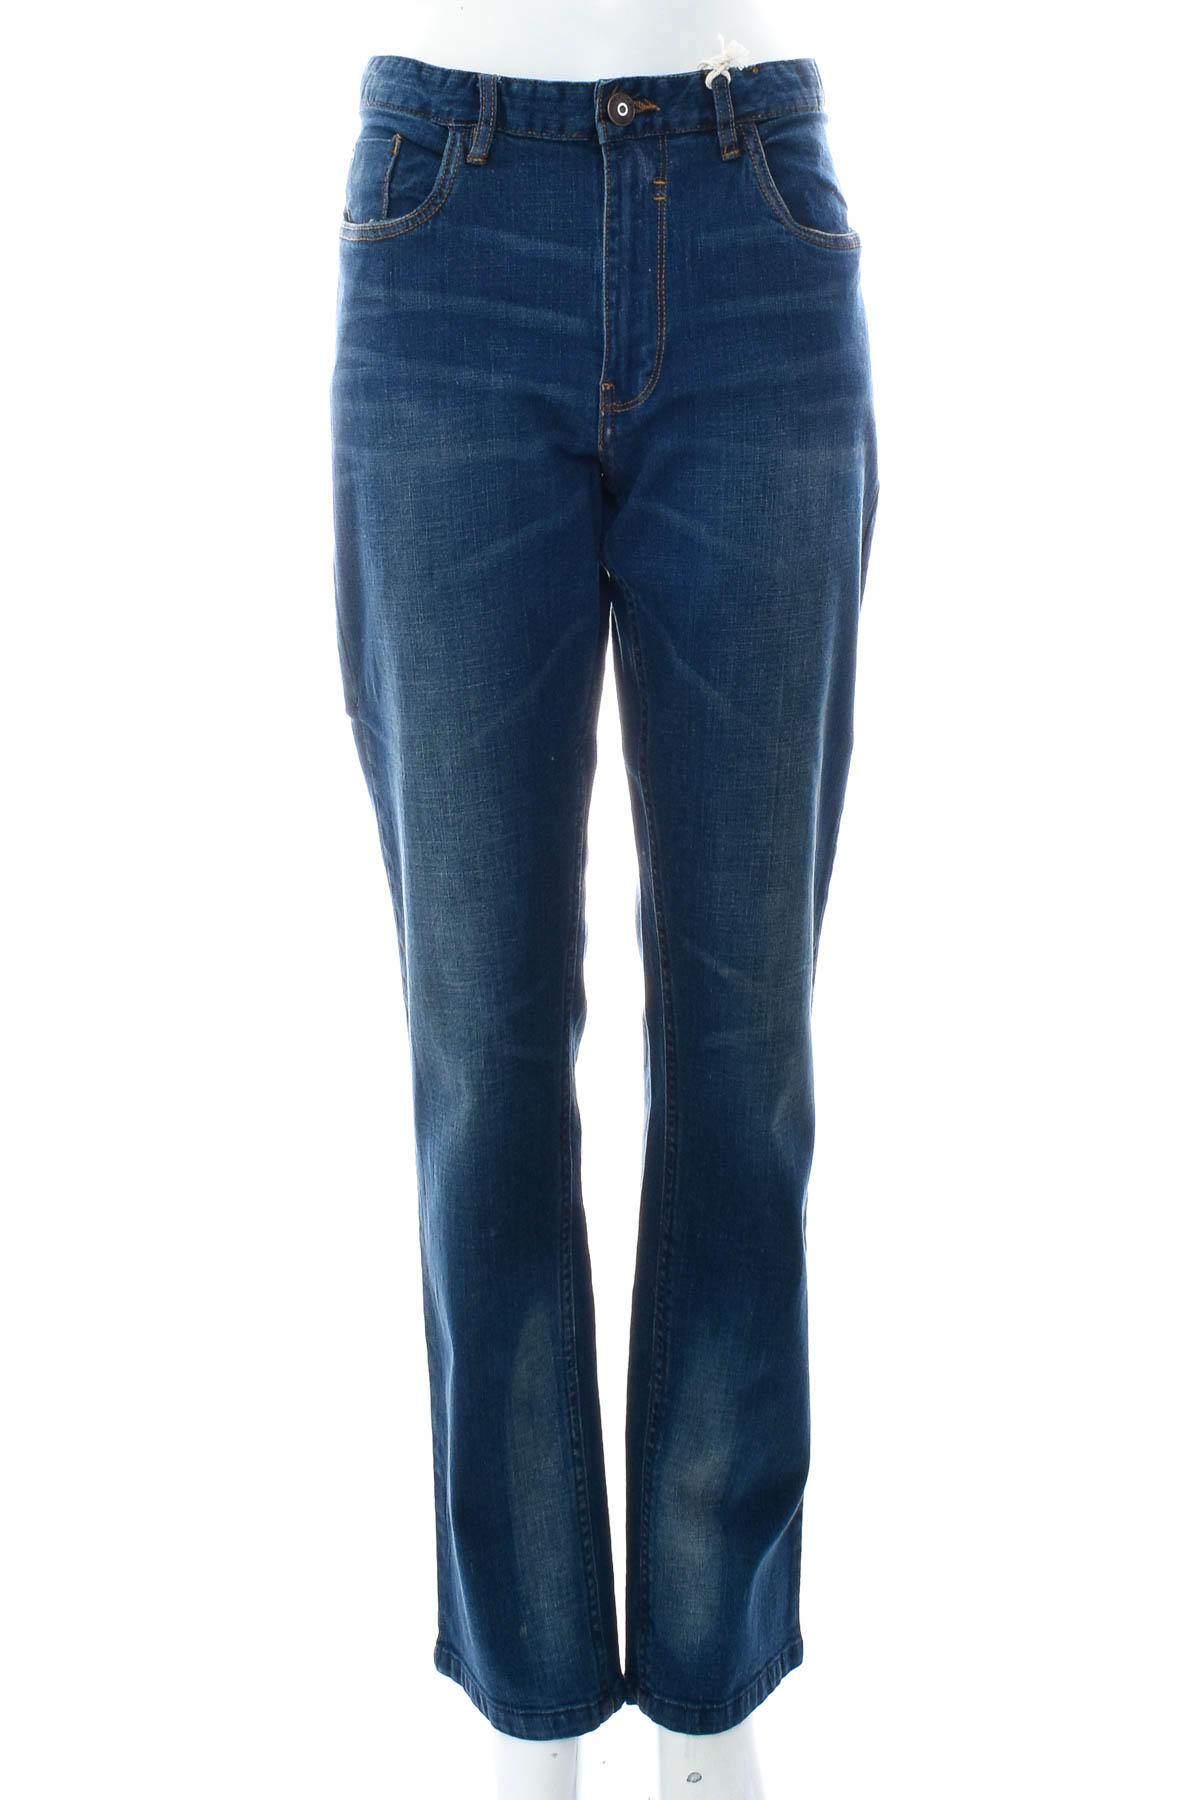 Jeans pentru bărbăți - Urban division - 0